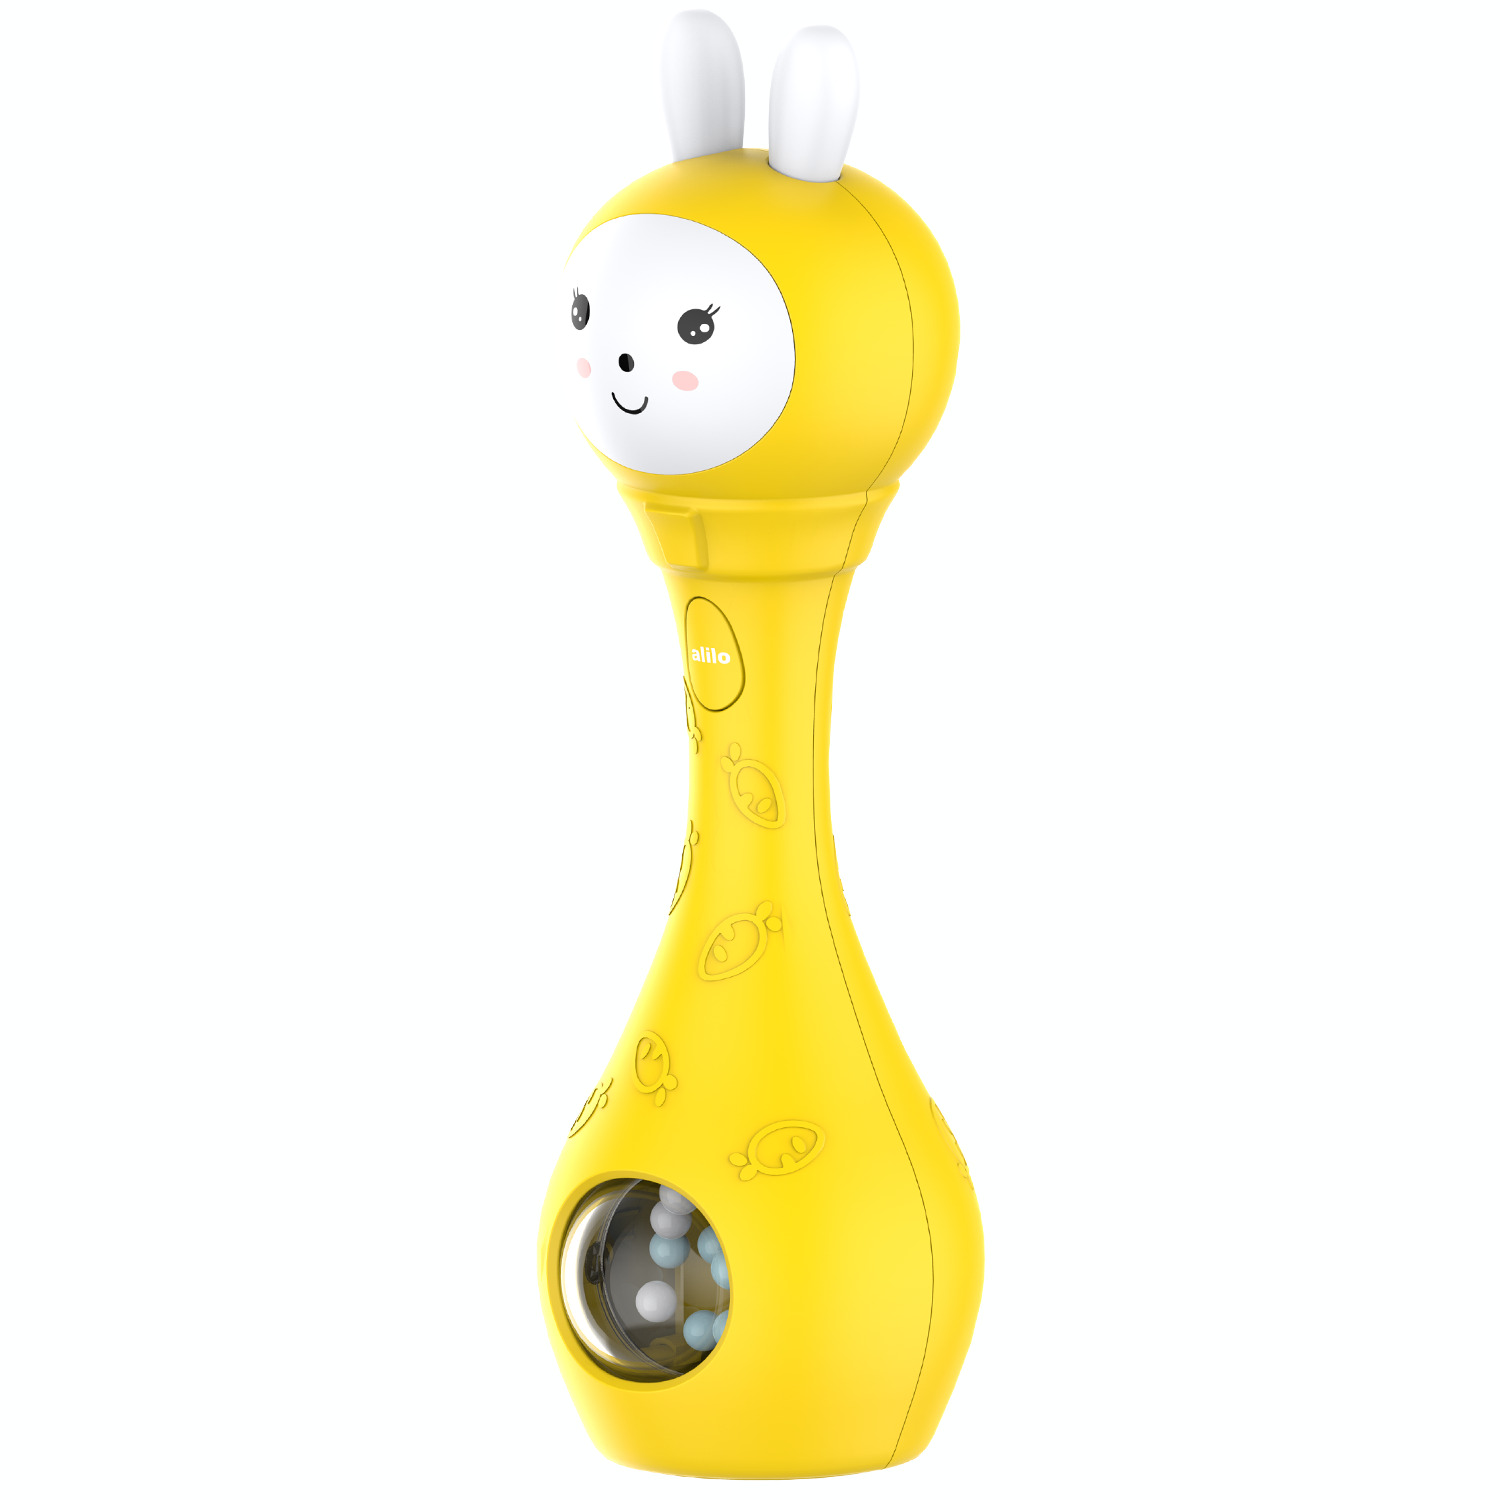 Музыкальная интерактивная игрушка Зайка-Карапуз alilo S1 погремушка, прорезыватель